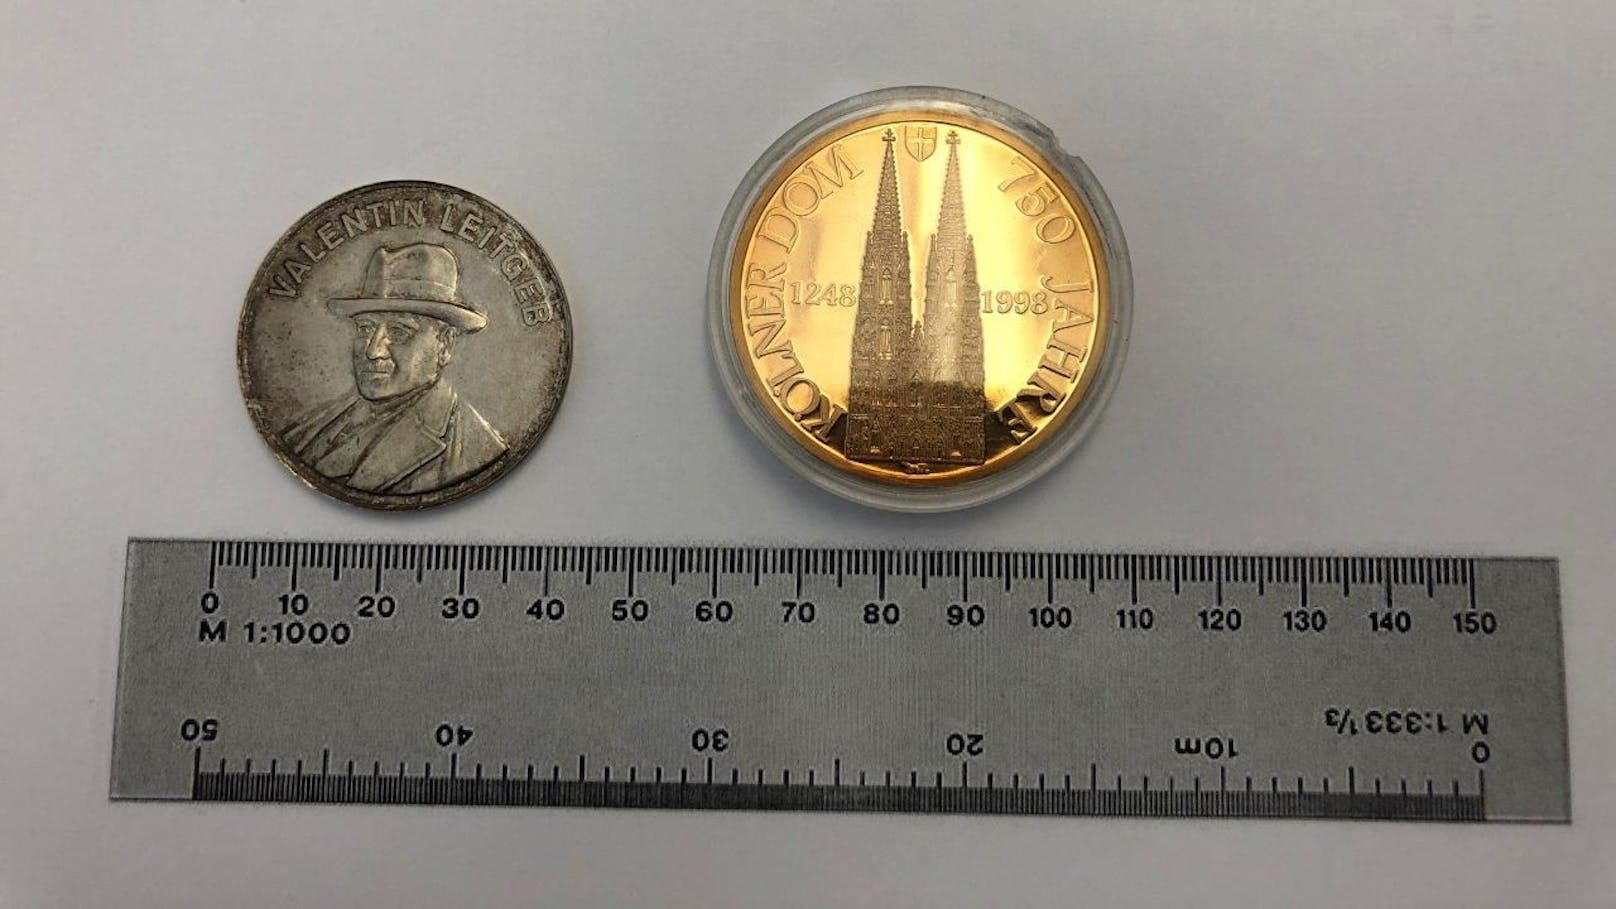 Diese beiden Gedenkmünzen wurden in einem Regenschirm versteckt gefunden.